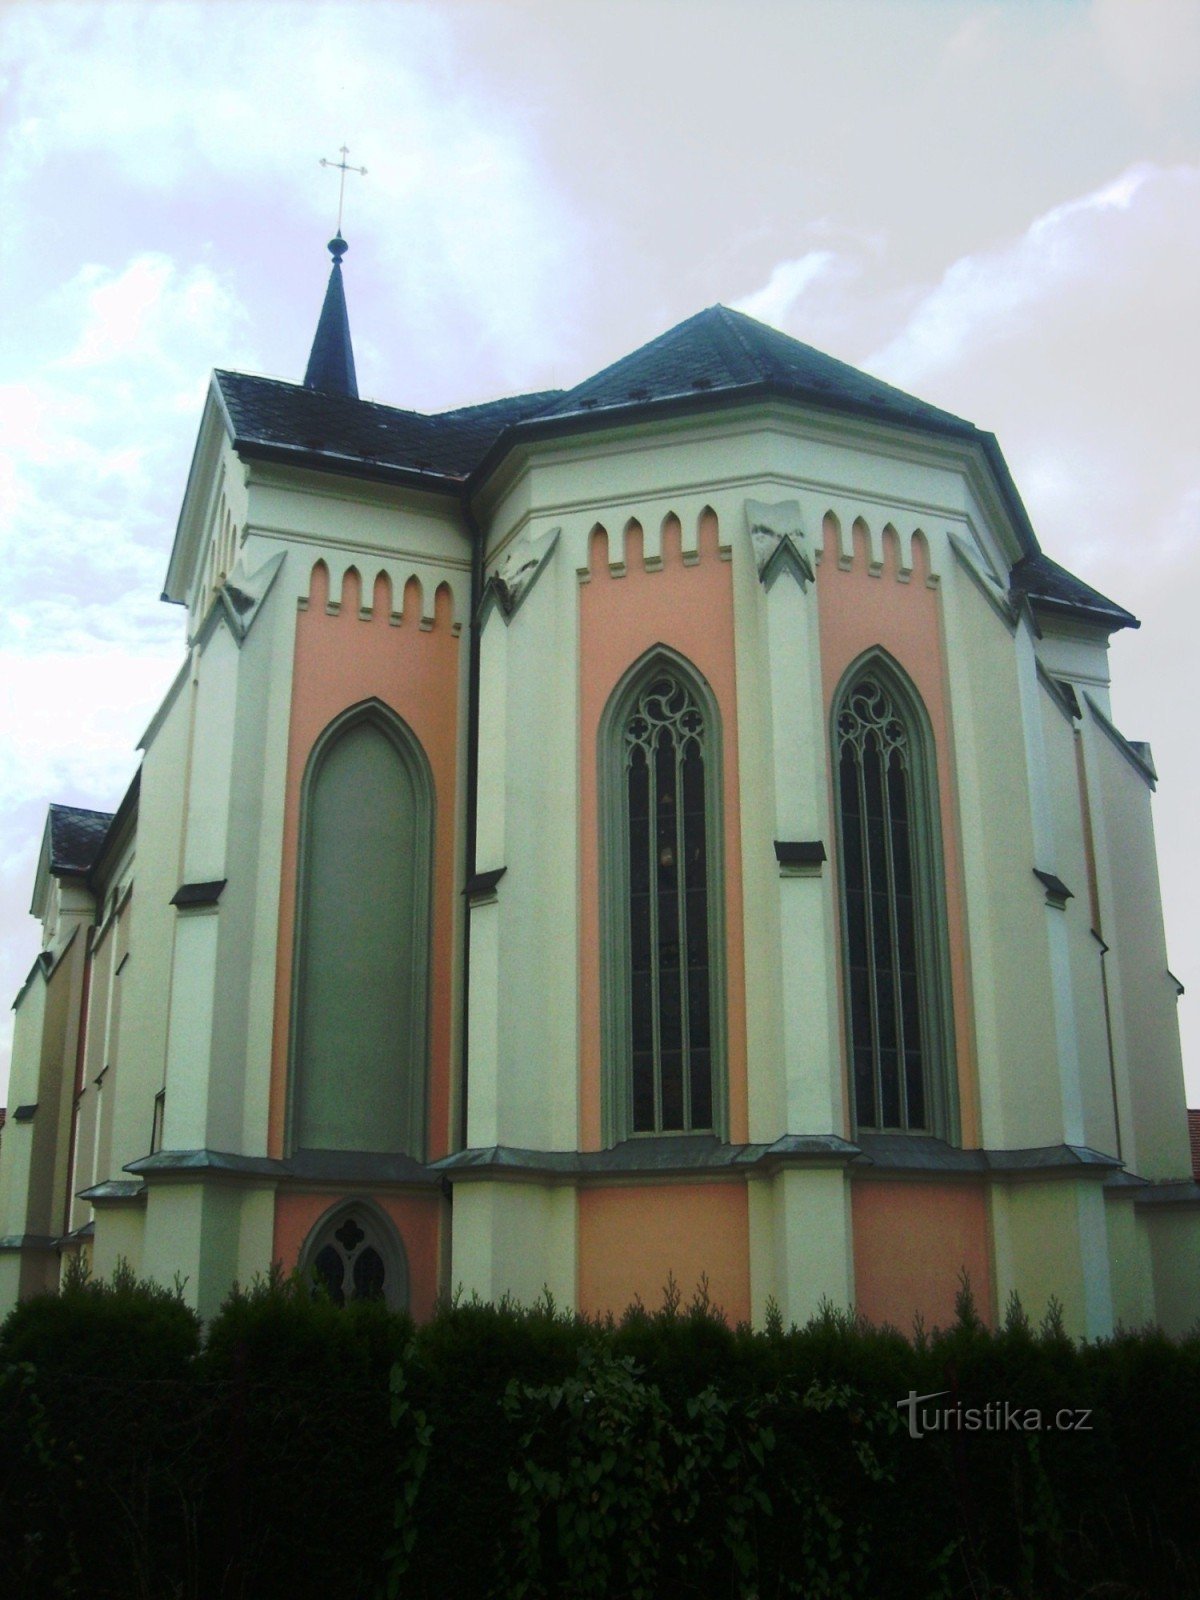 新哥特式风格的教堂